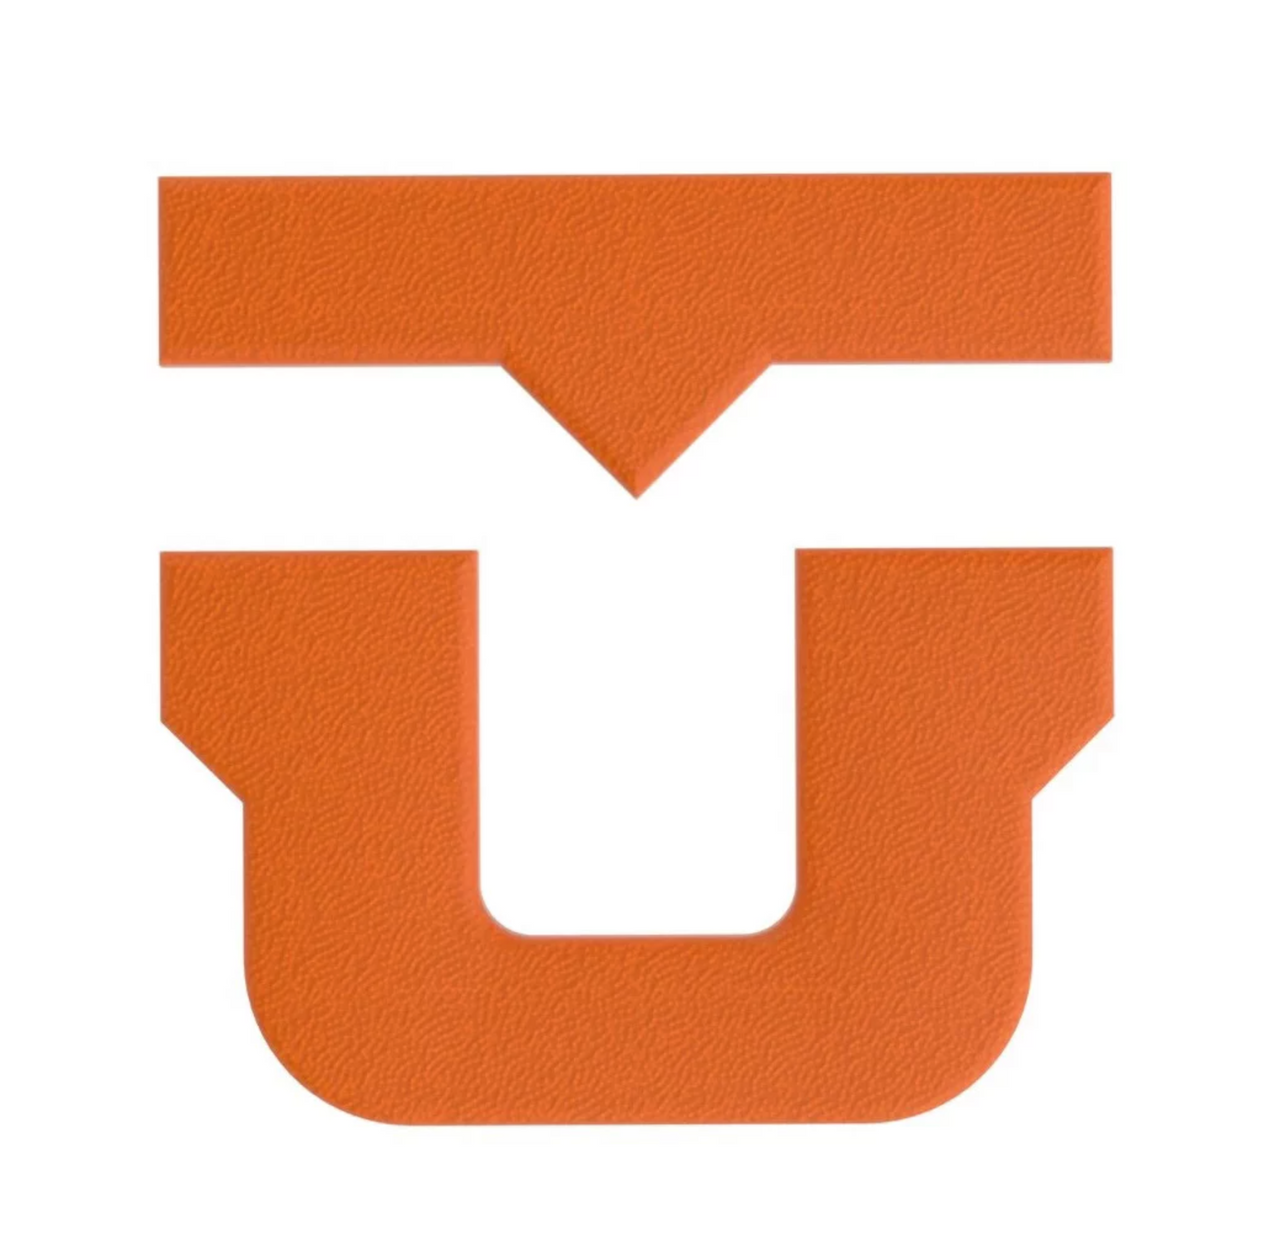 Union U Stomp Pad - Orange